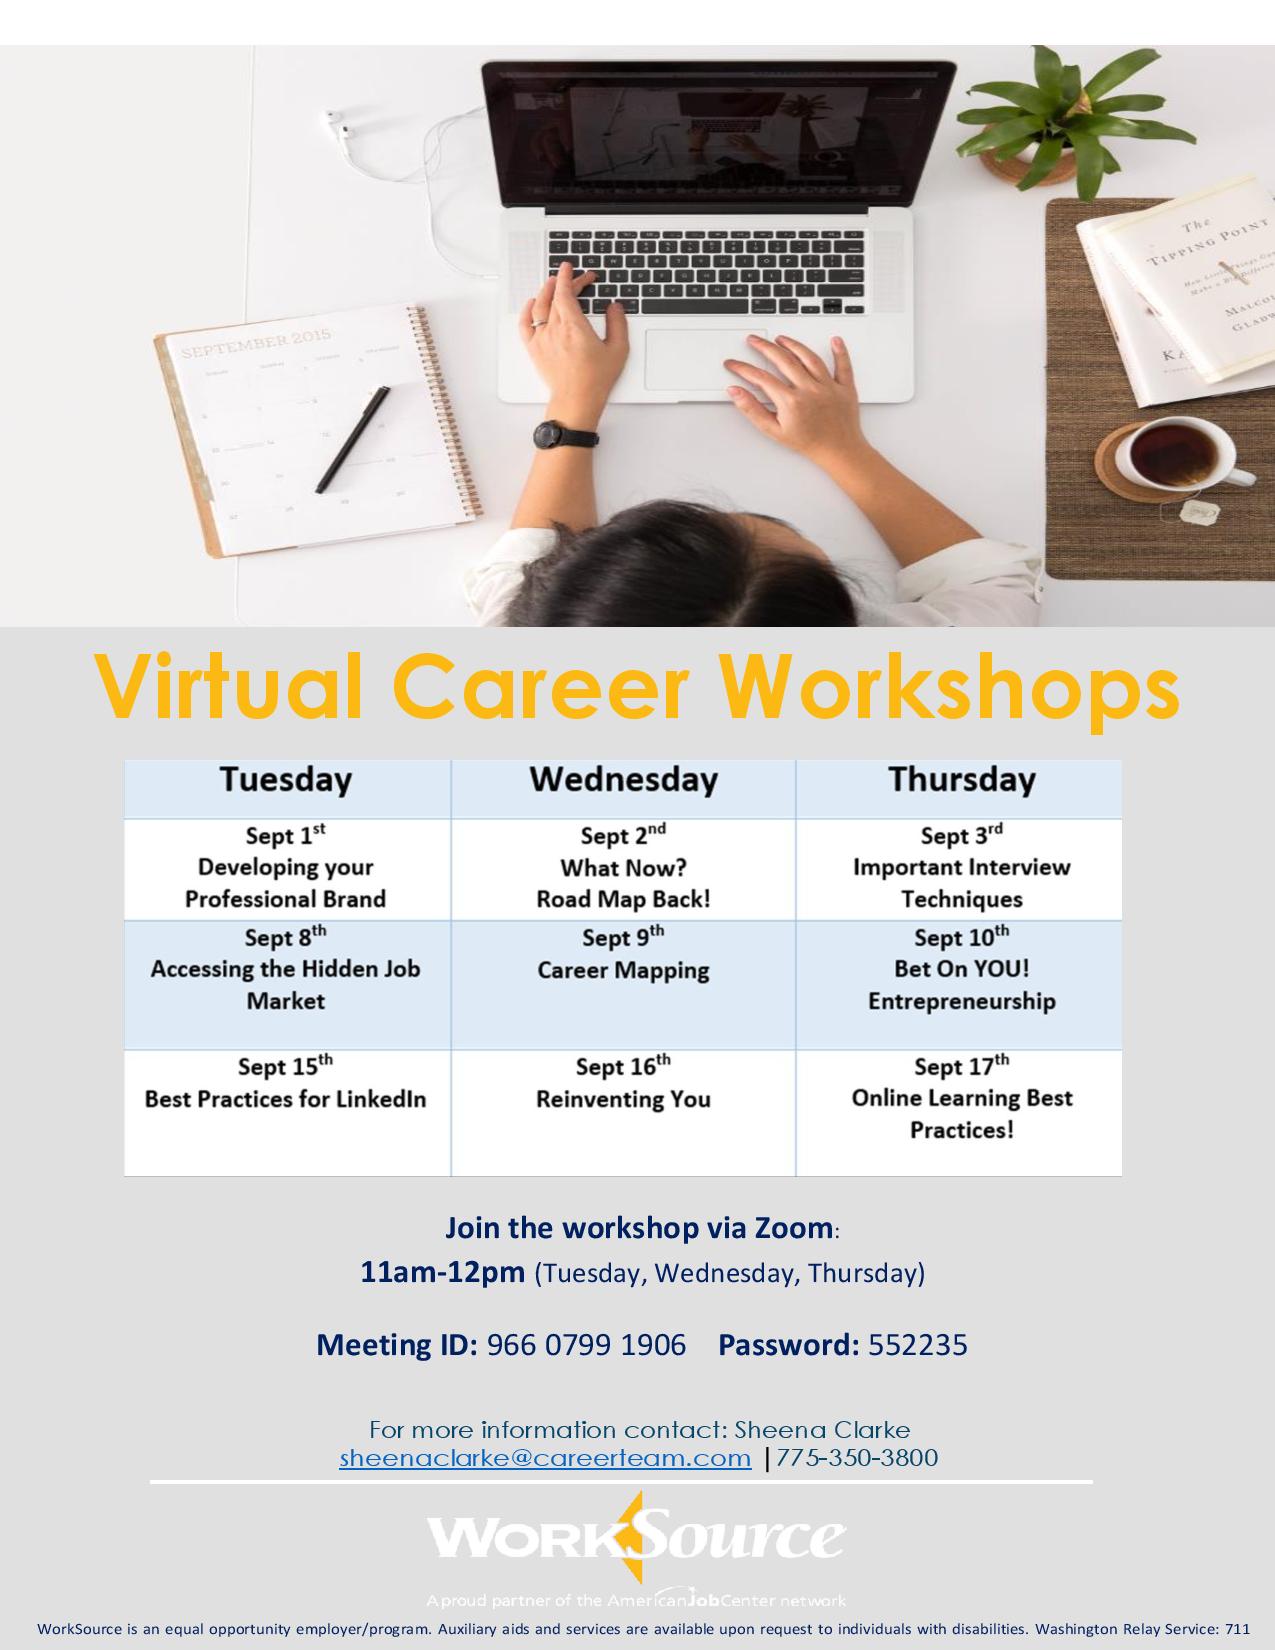 Virtual Career Workshops for September 2